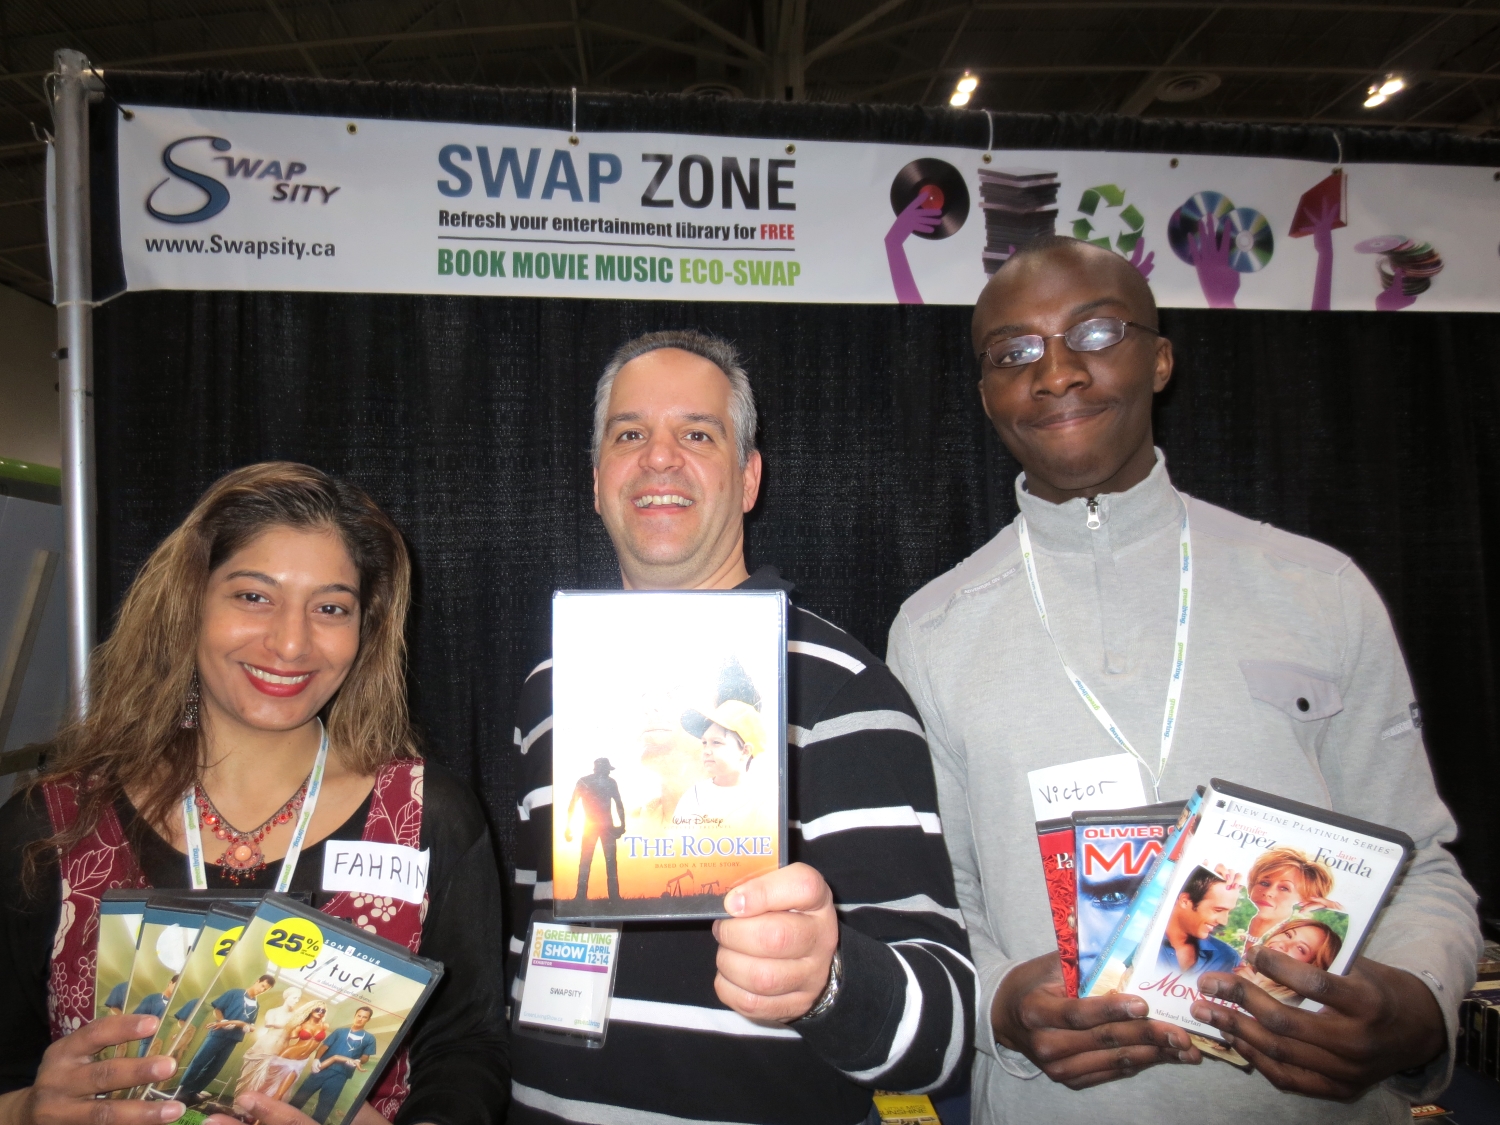 Swapsity Swap Zone volunteers rock!